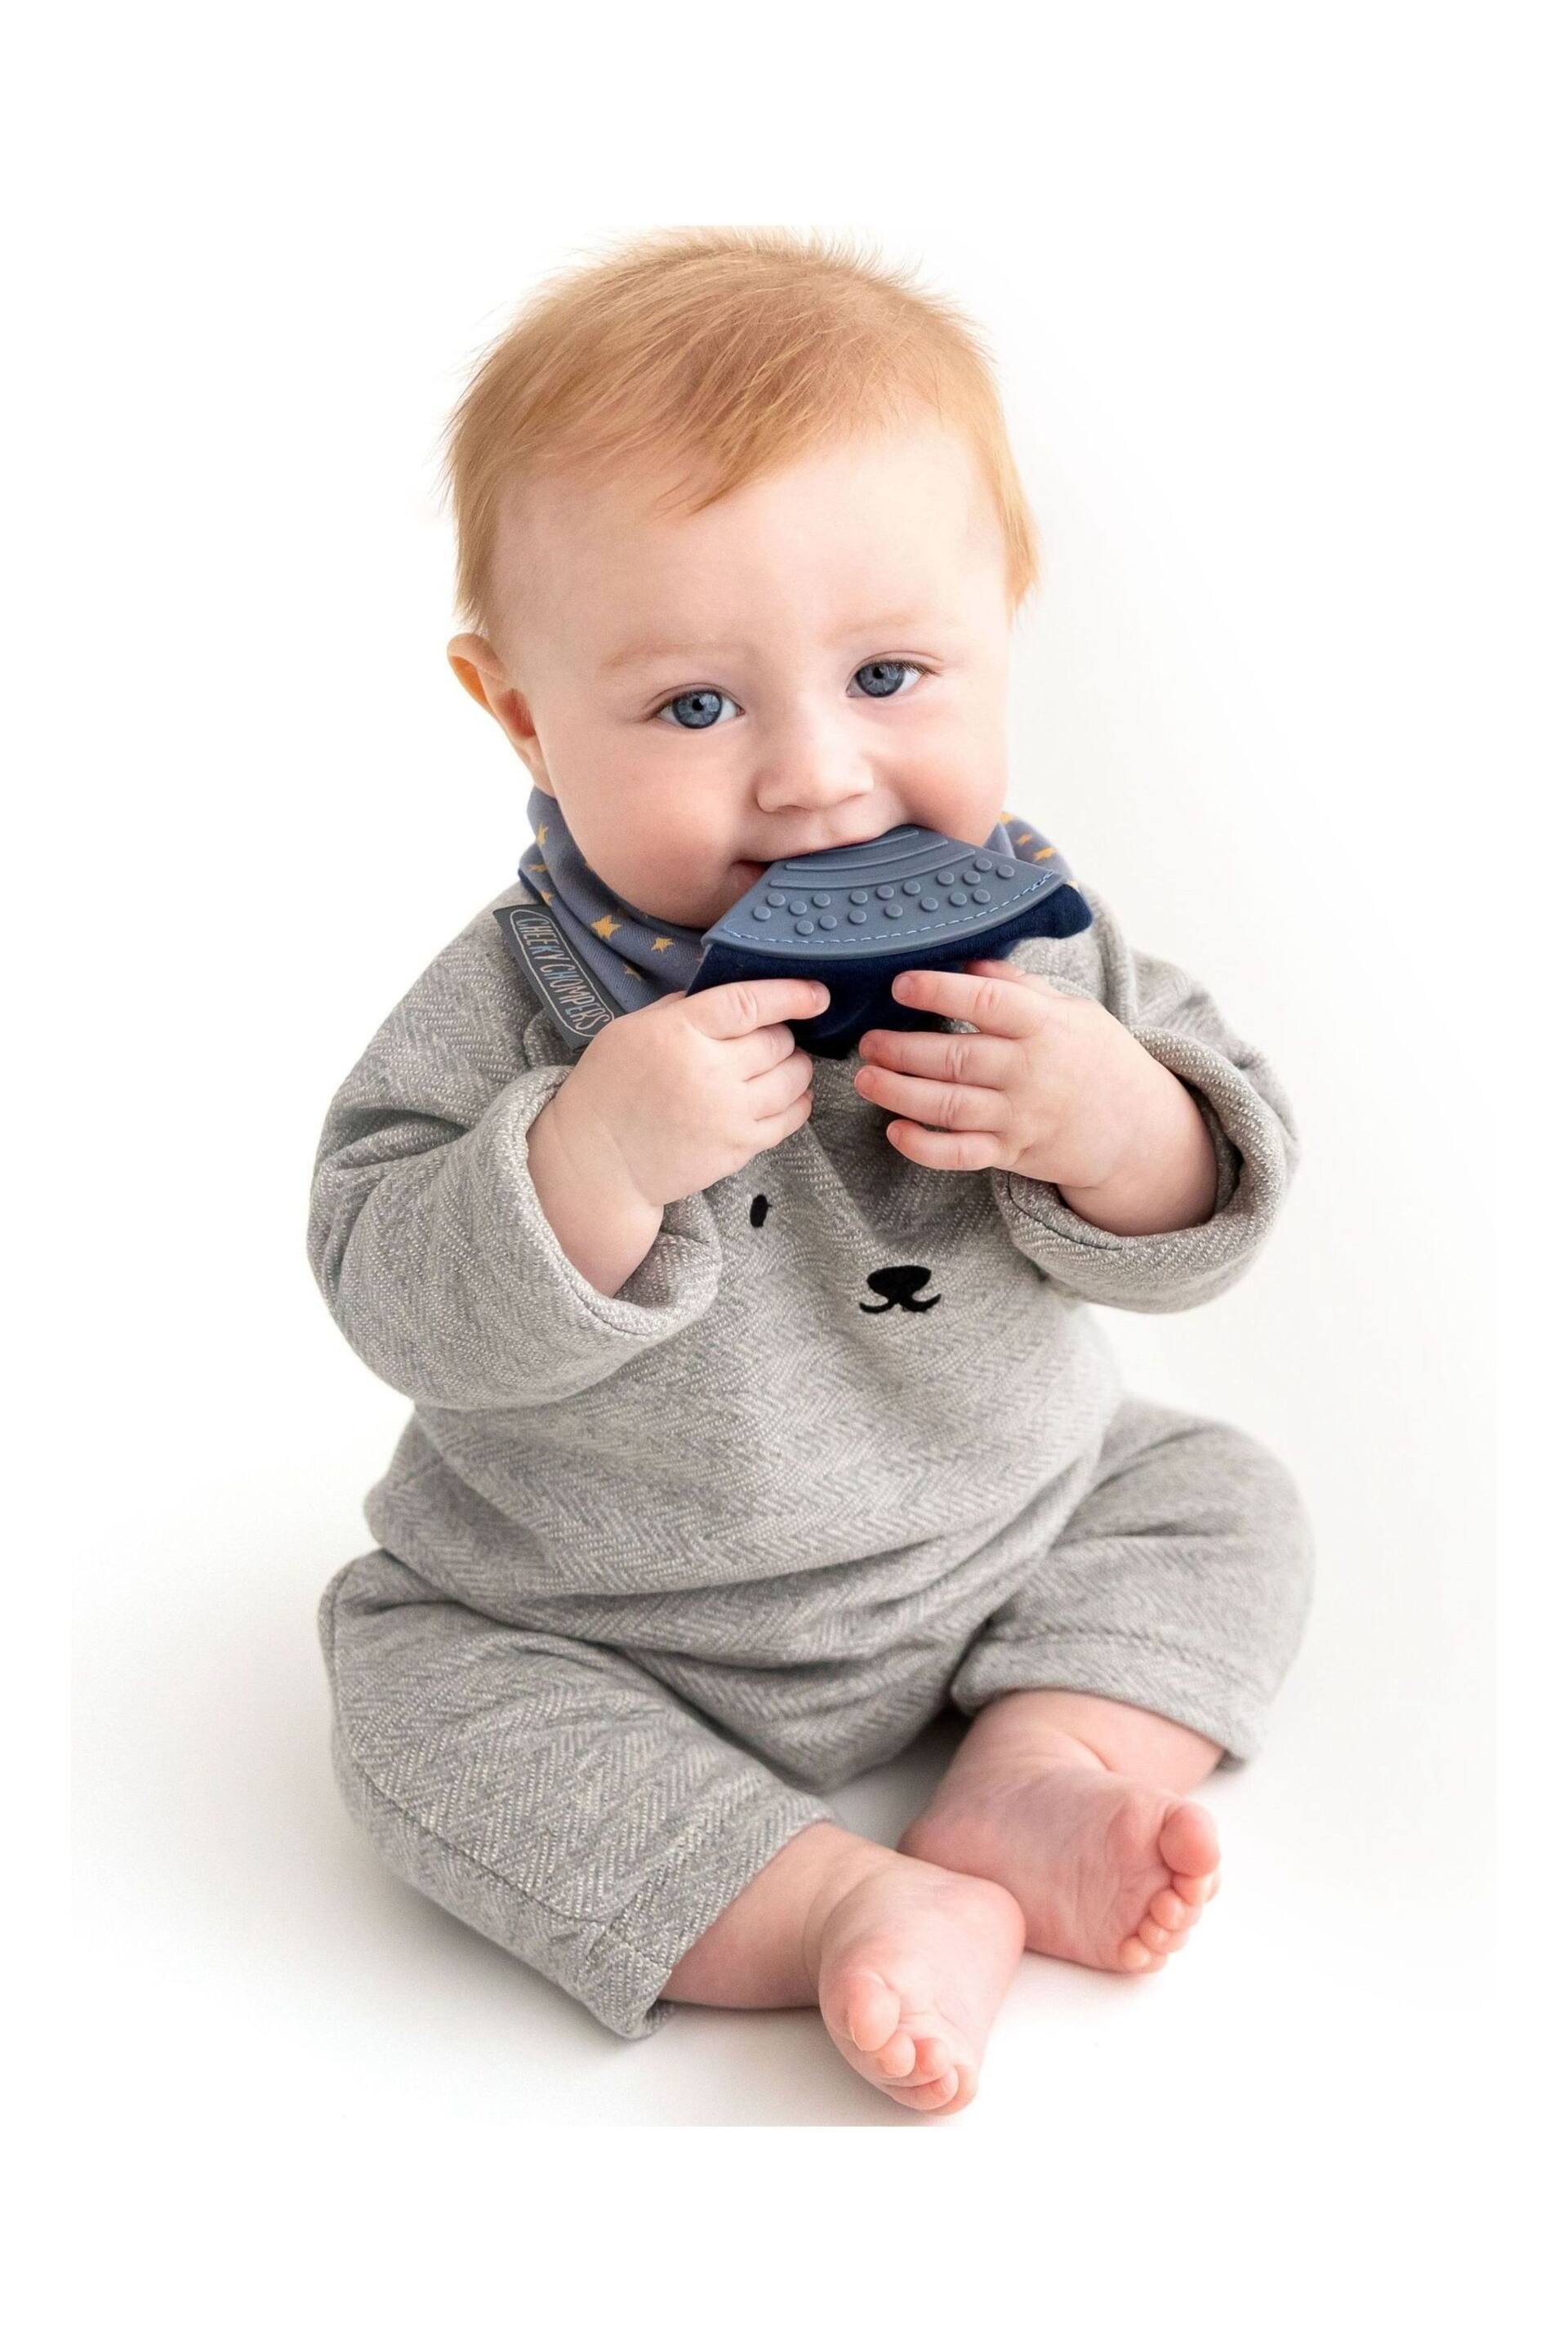 Cheeky Chompers Teething Dribble Baby Bibs 3 Pack - Image 5 of 10